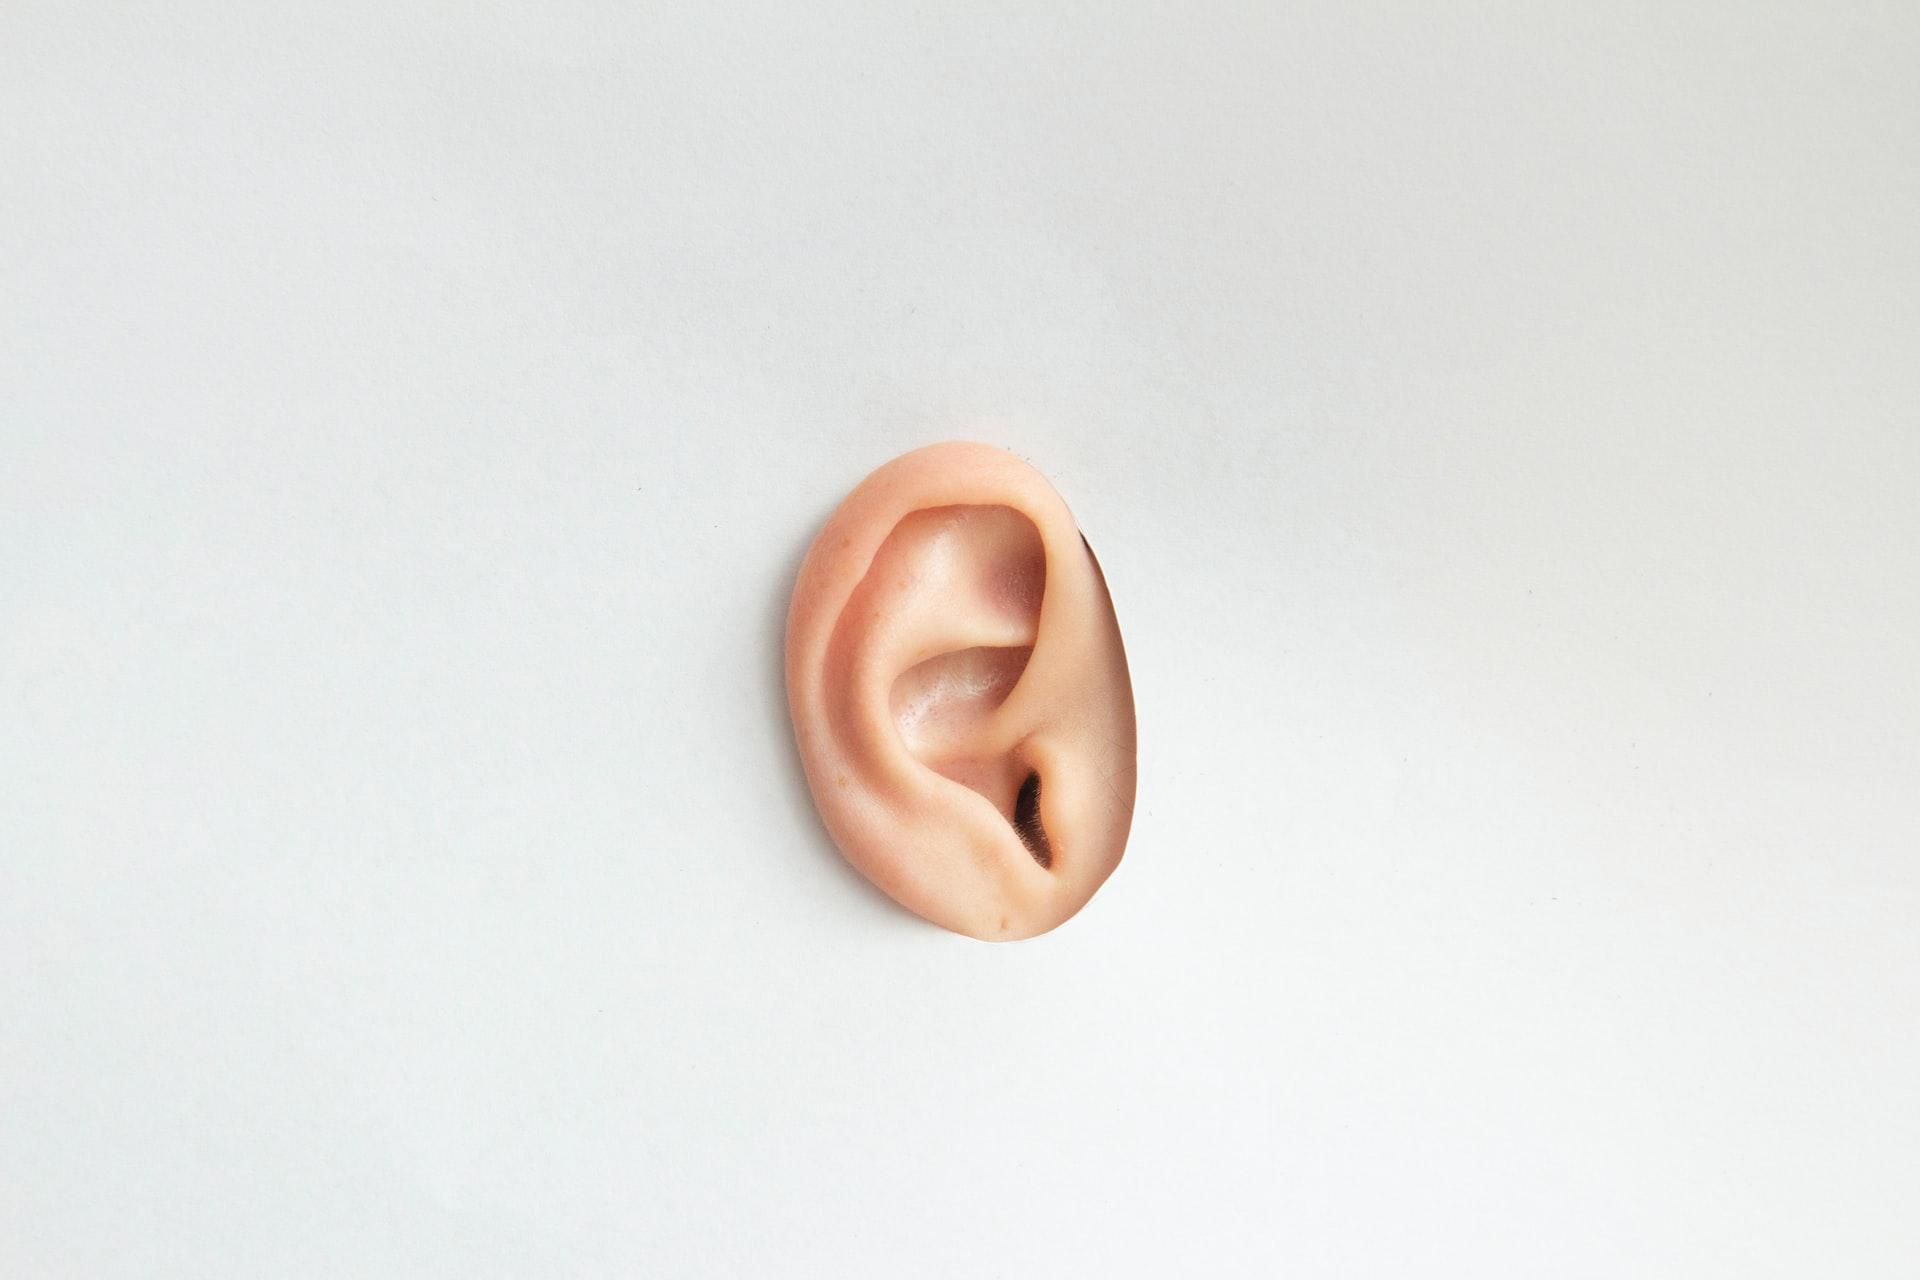 Коронавирус может инфицировать внутреннее ухо и влиять на слух. - Новости Здоровье